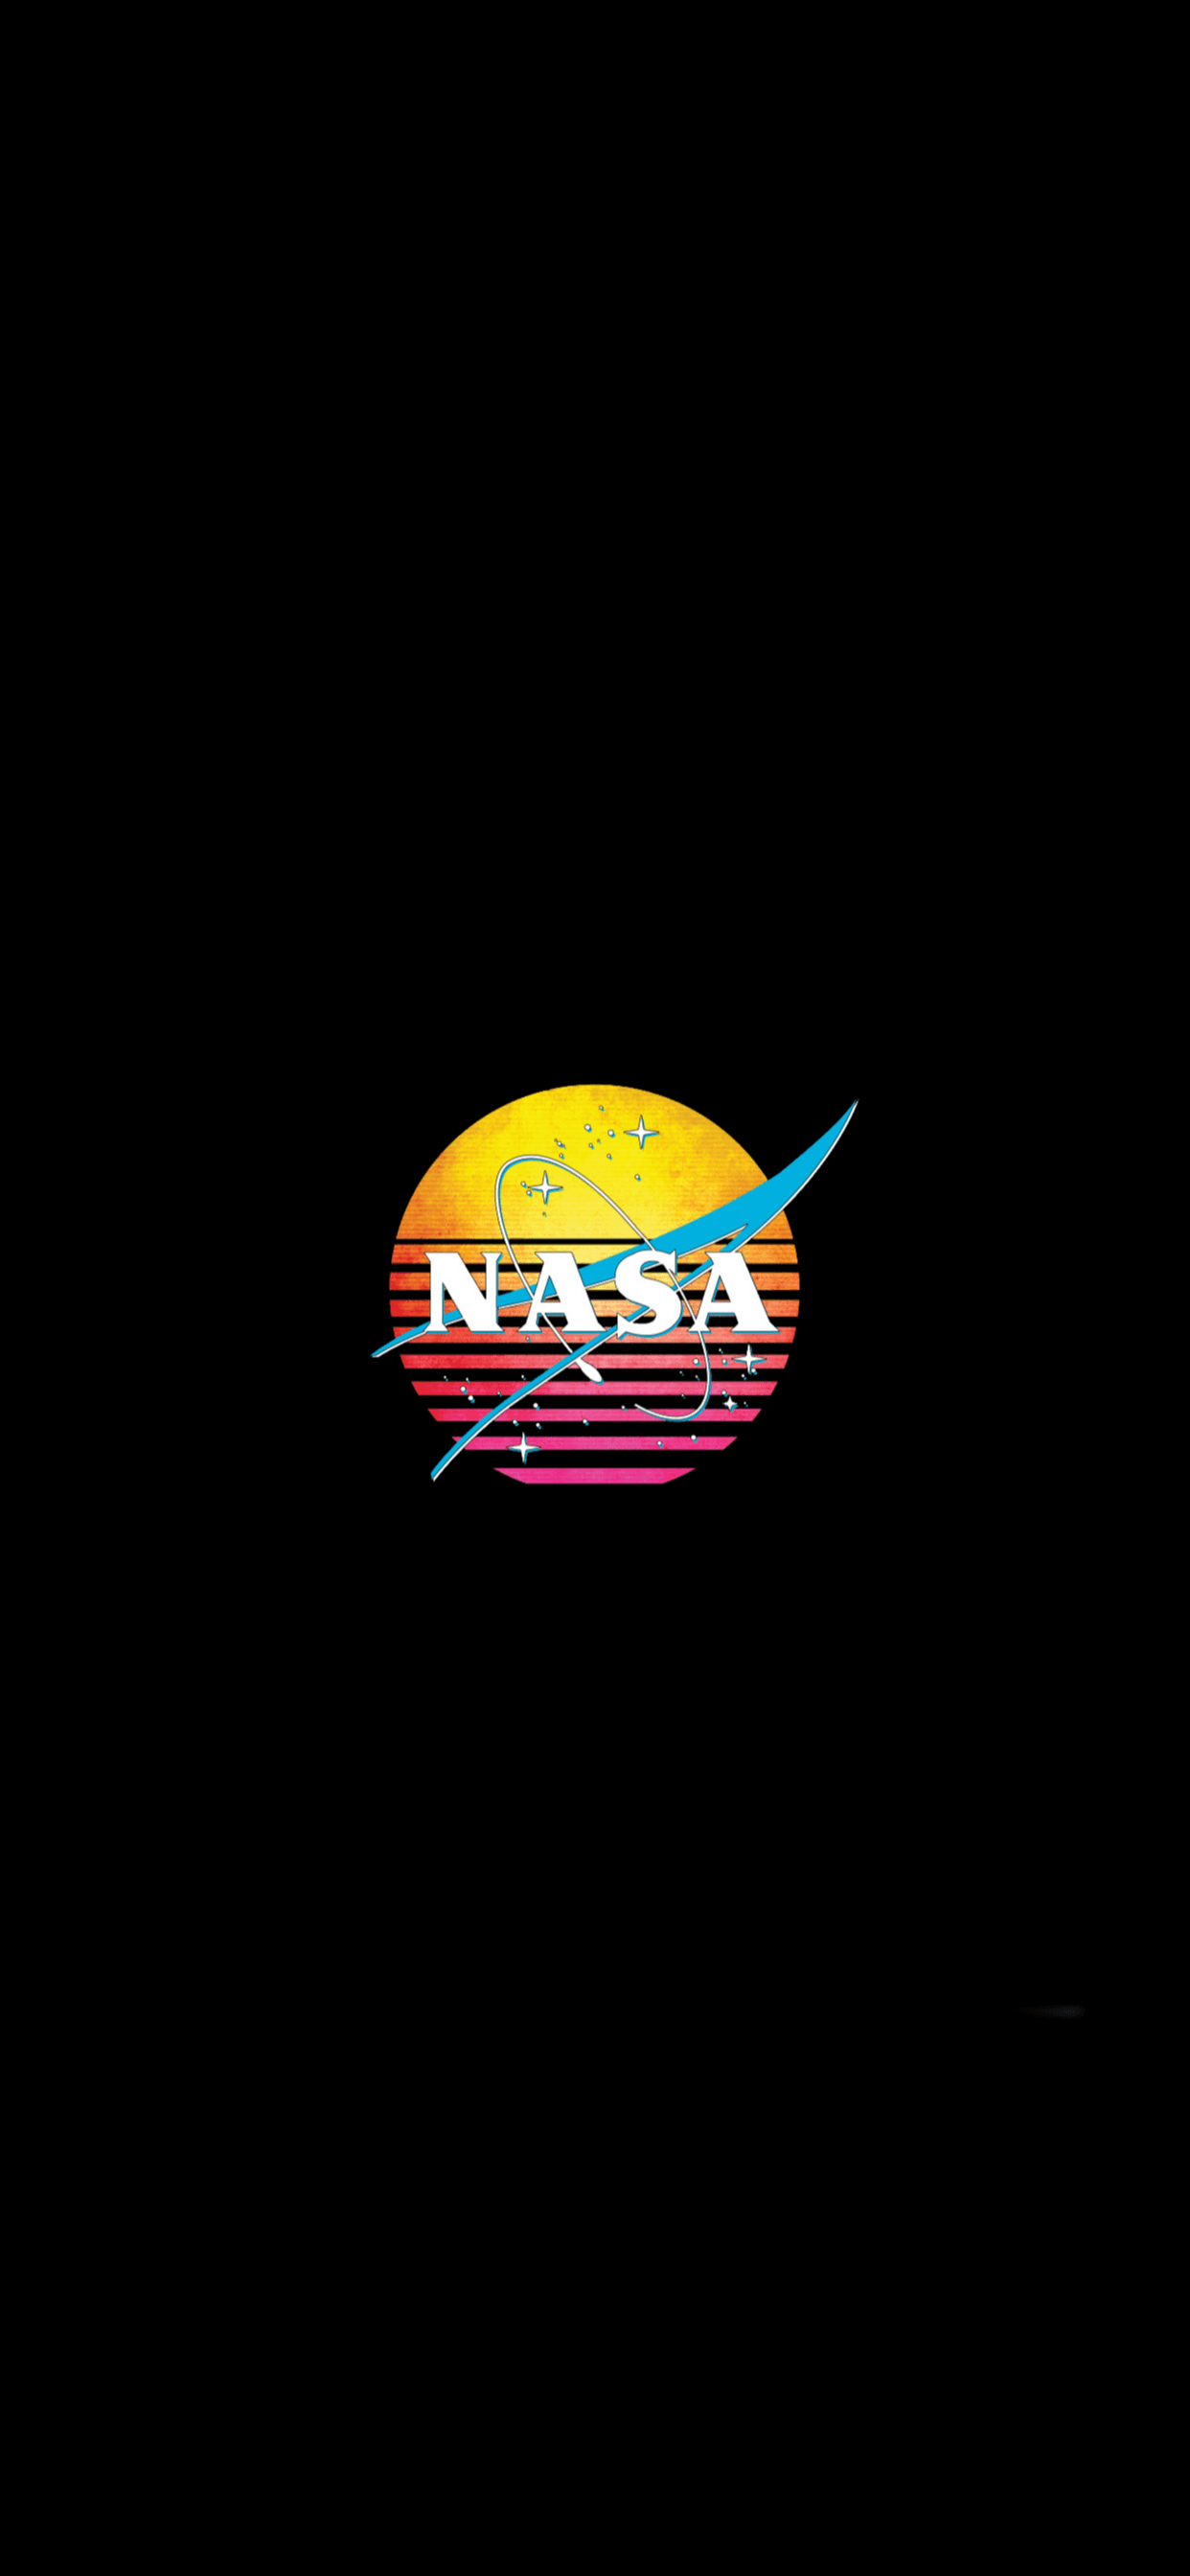 NASA Logo From R Nasa, But With The Circle Of The Emblem